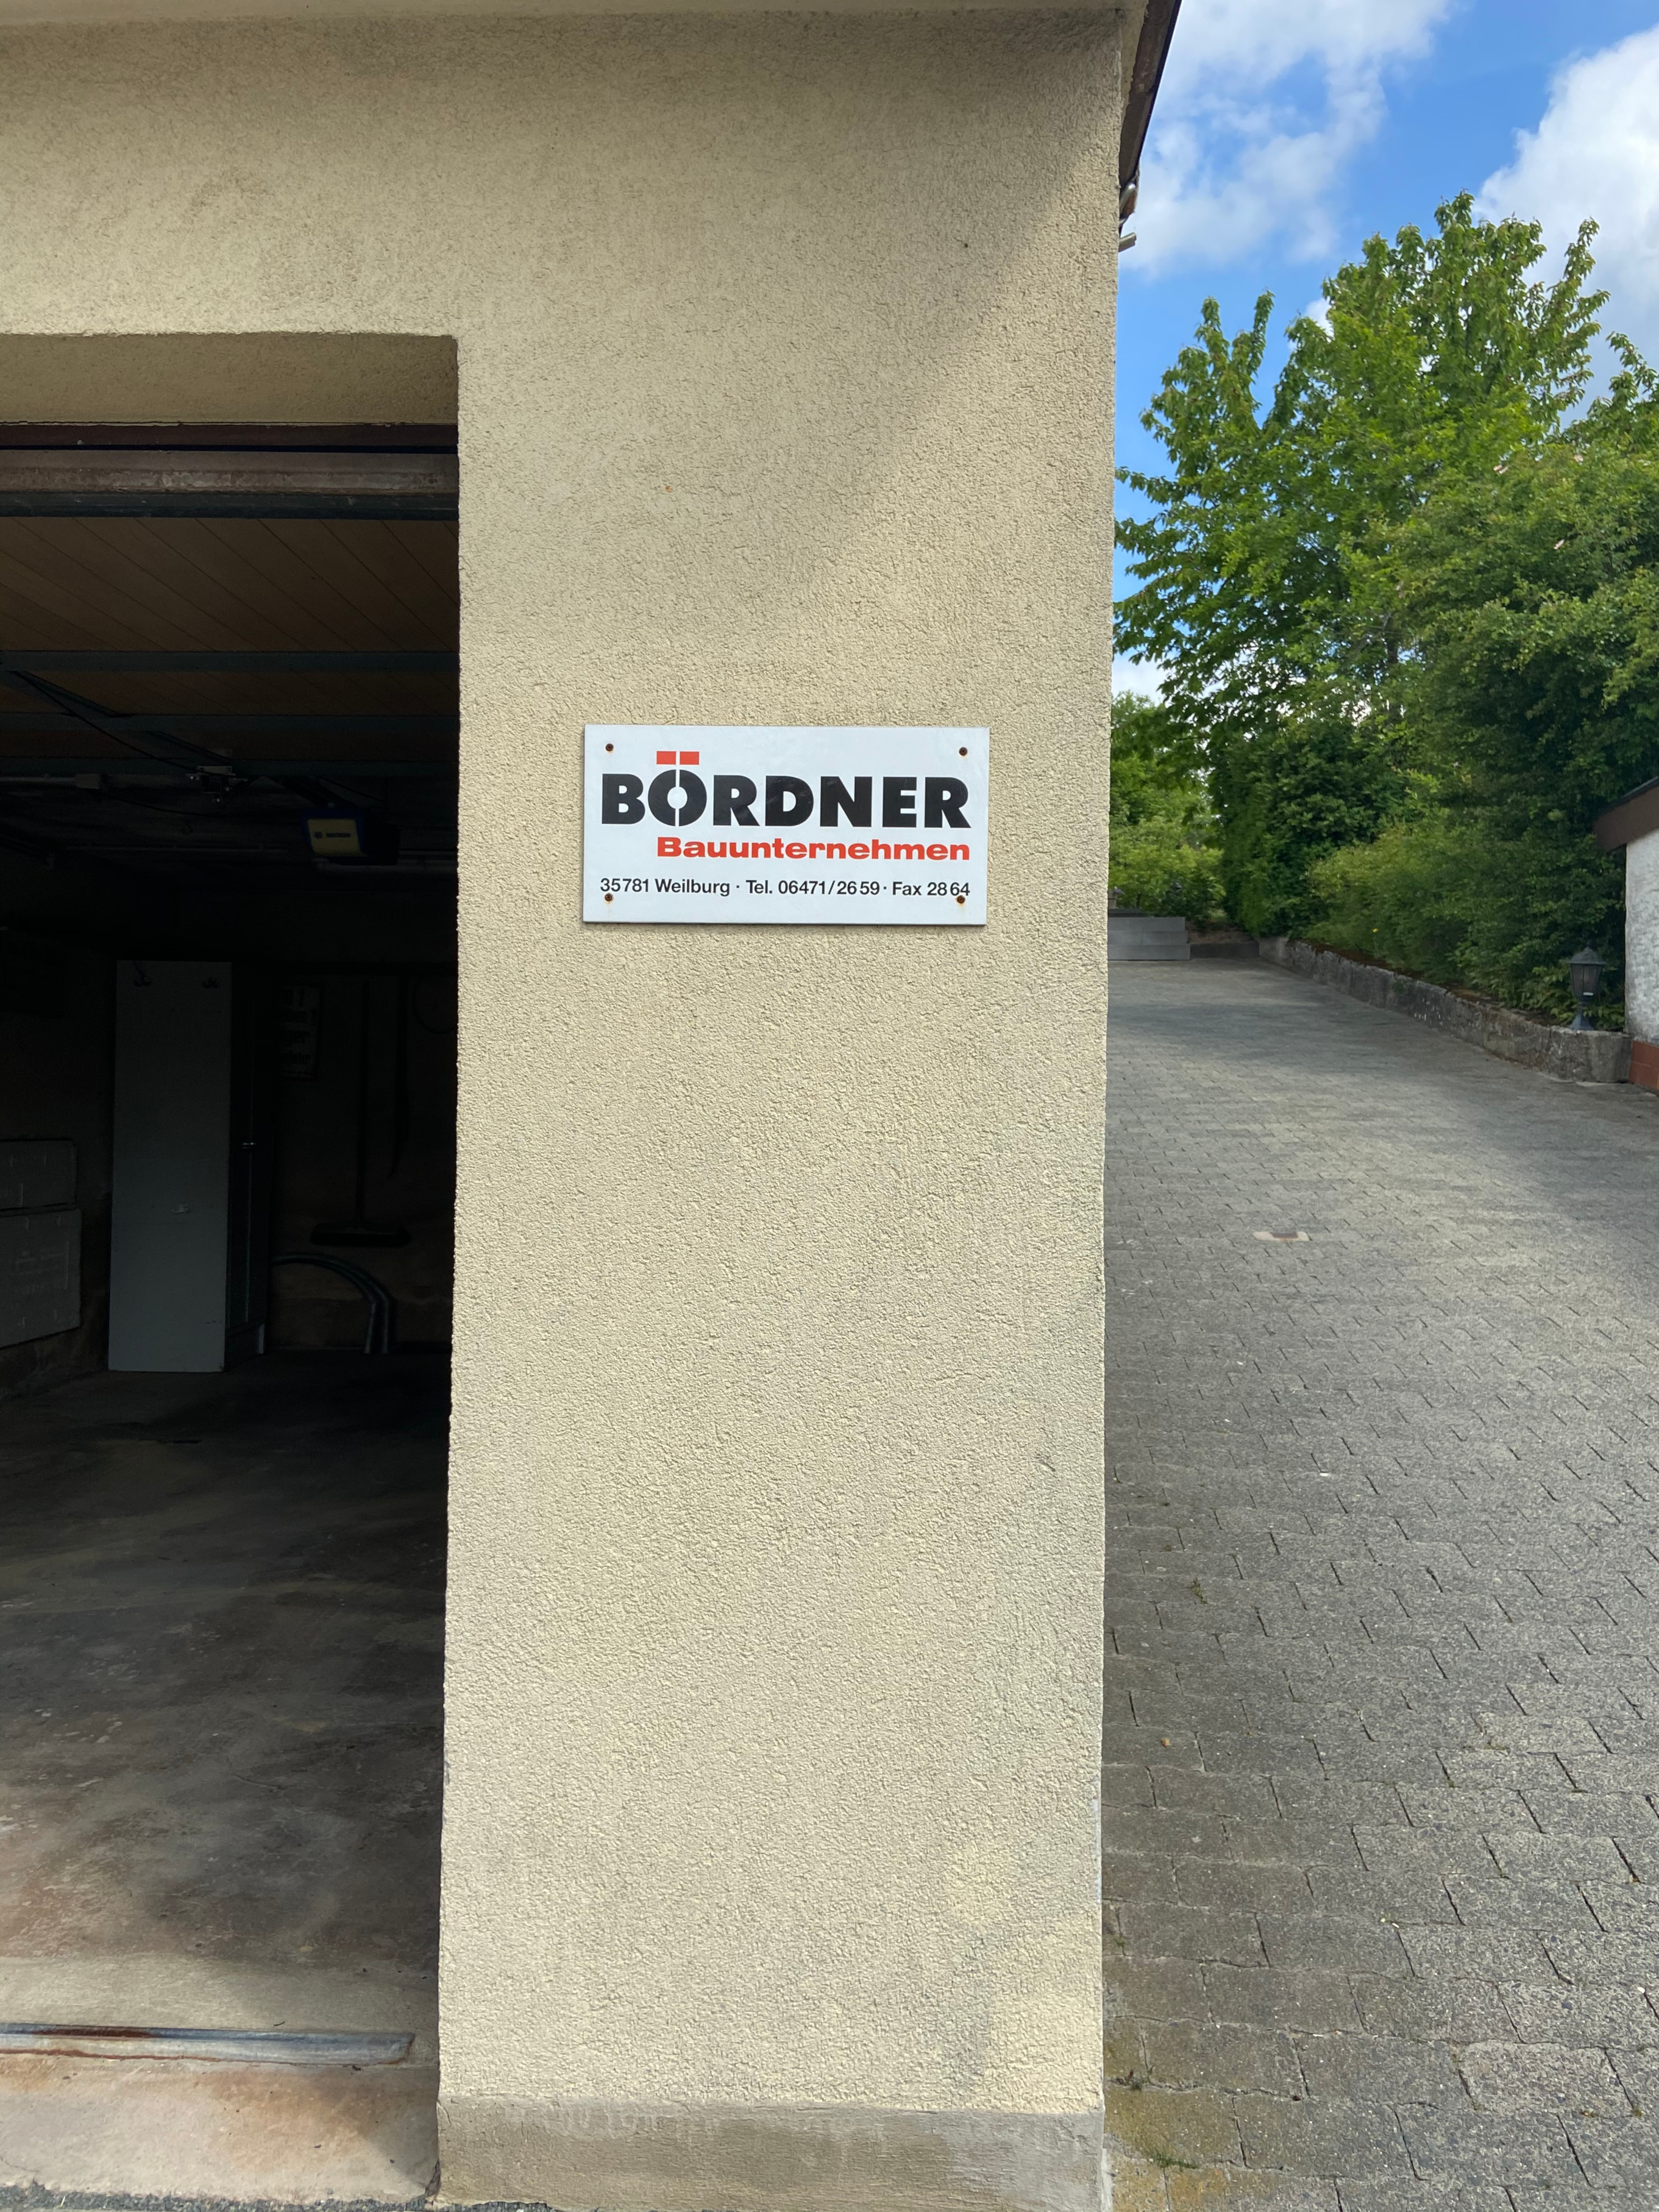 Adolf Bördner Hoch- und Tiefbau GmbH & Co. KG, Auf dem Schulberg 3 in Weilburg